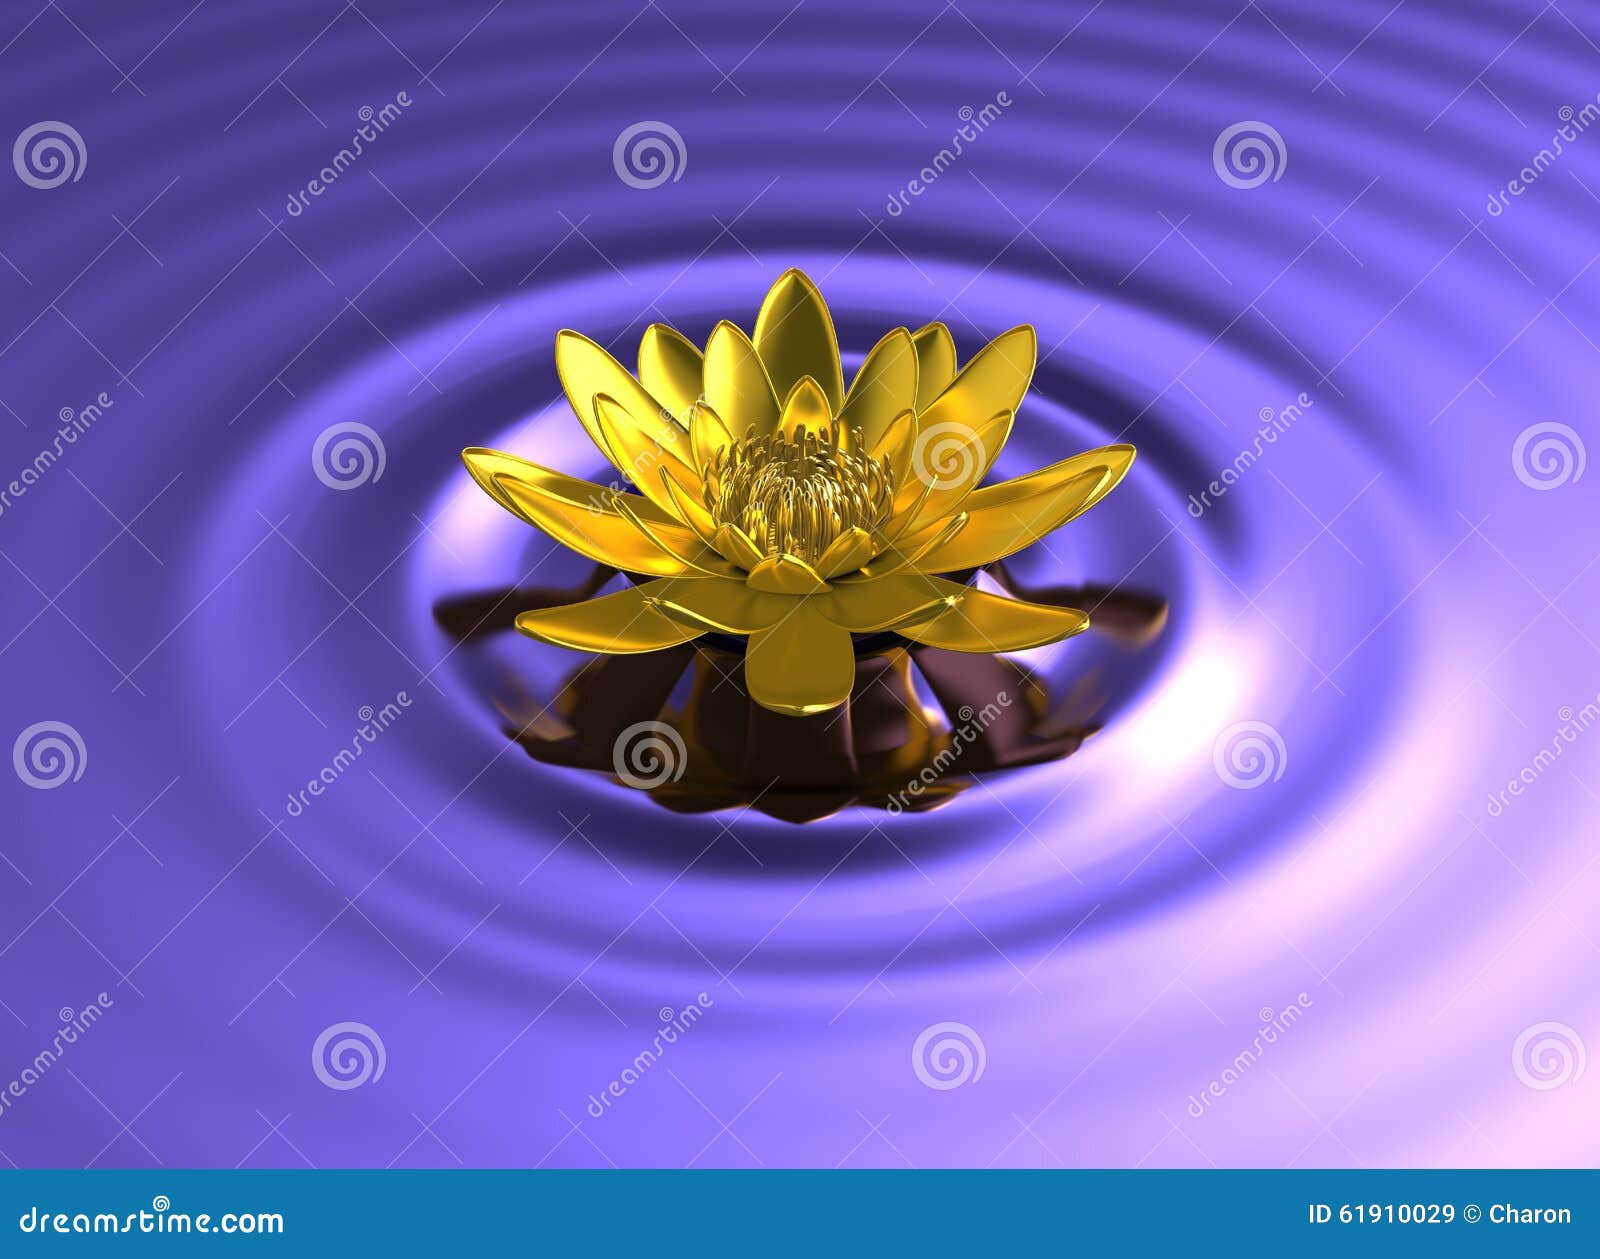 Il significato del fiore di loto  Lotus flower pictures, Lotus flower art,  Lotus flower images